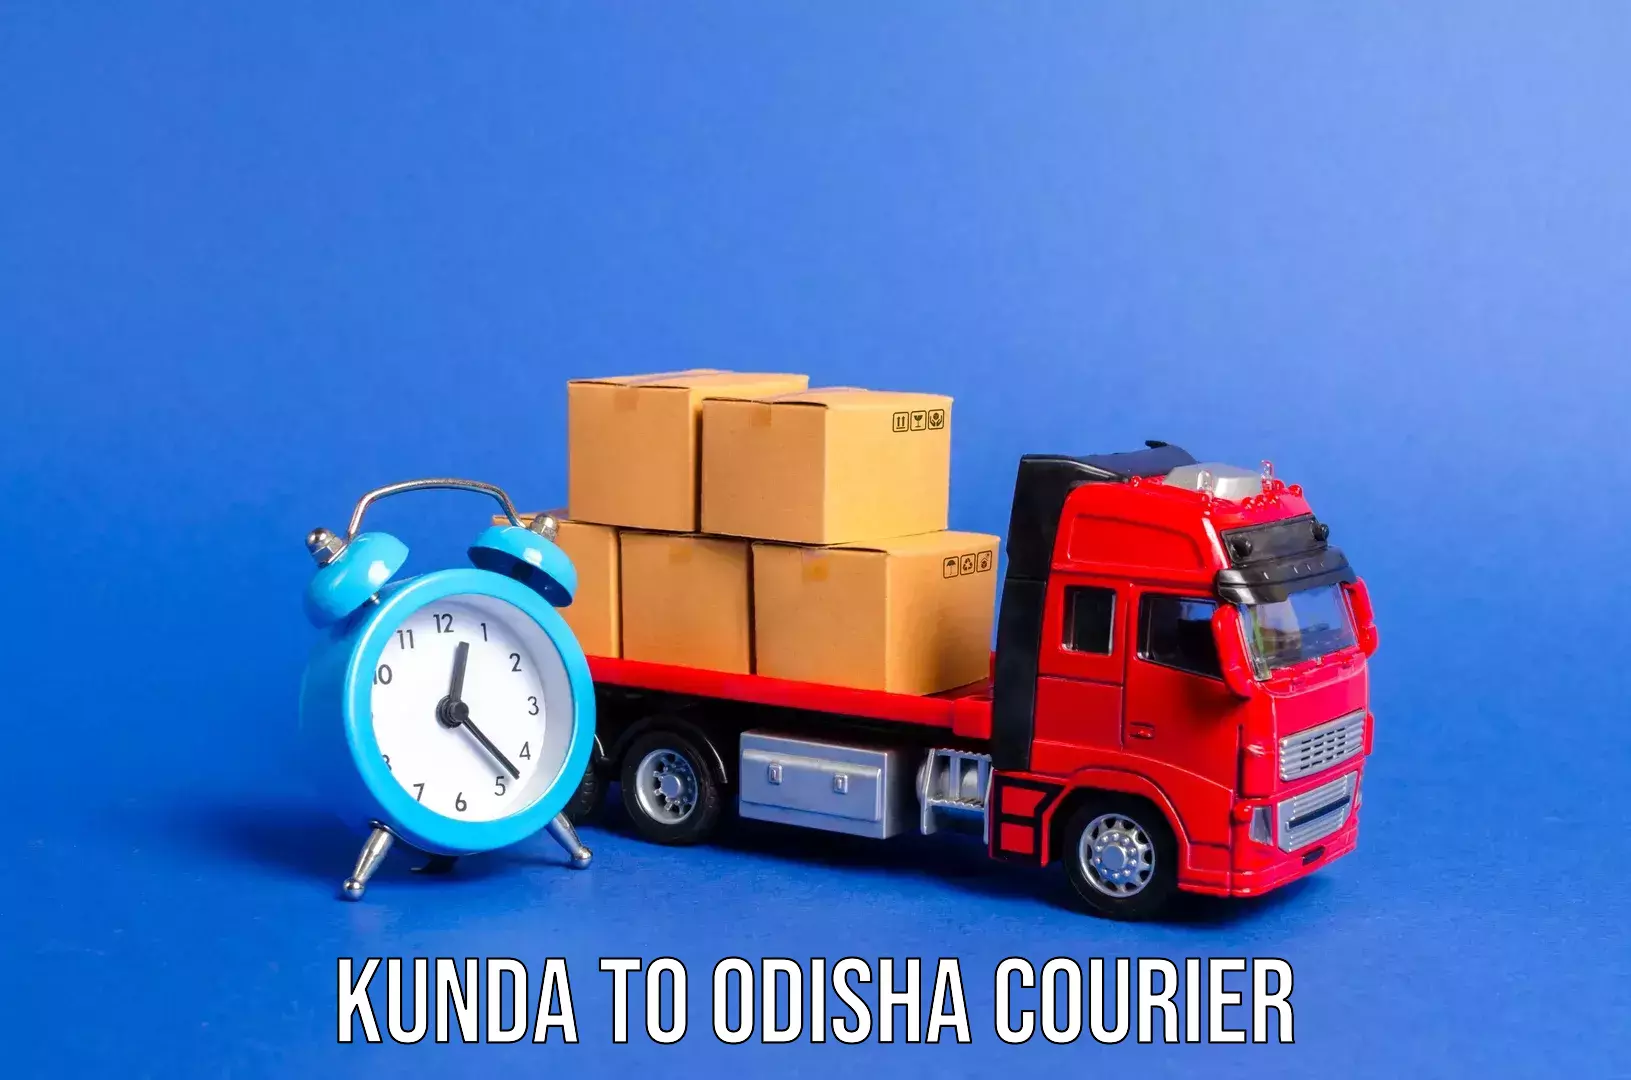 Urban luggage shipping Kunda to Kuchinda